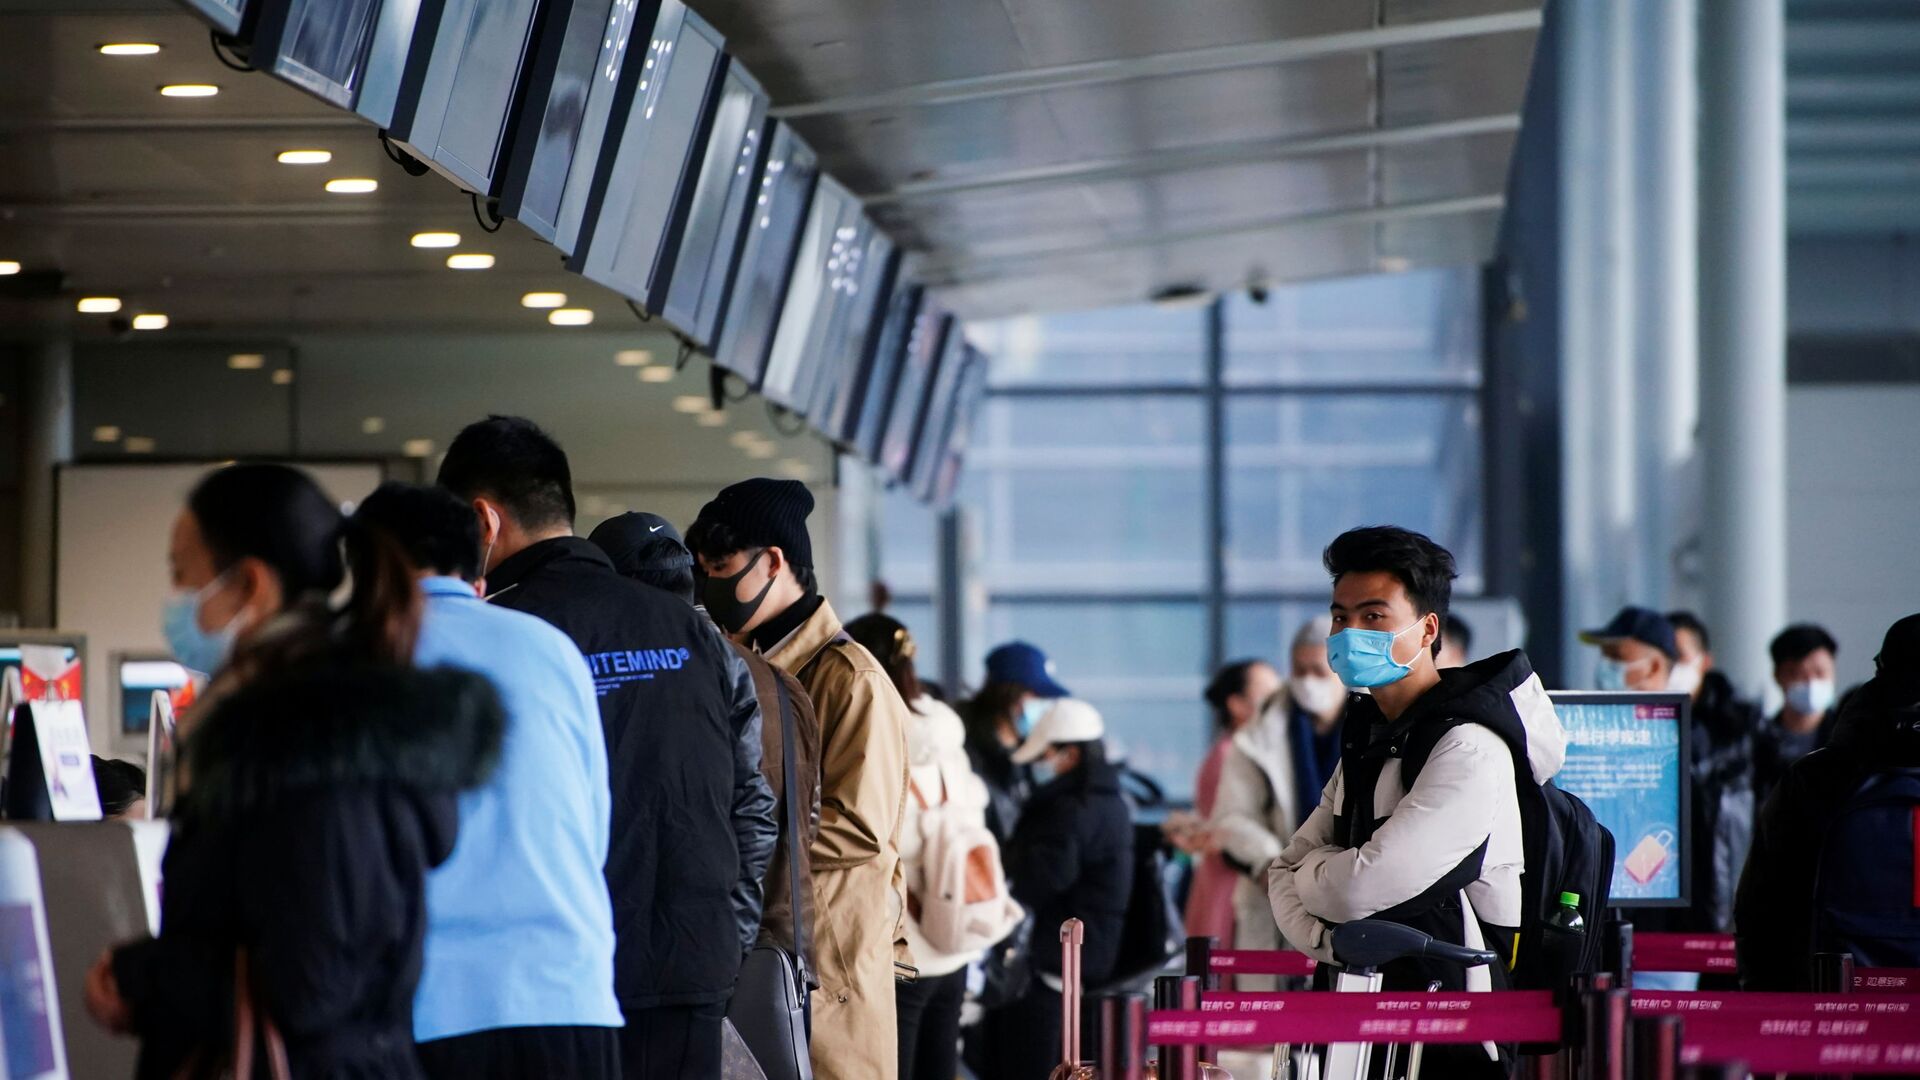 Путешественники в защитных масках в очереди в Шанхайском аэропорту, Китай - Sputnik Таджикистан, 1920, 27.03.2021